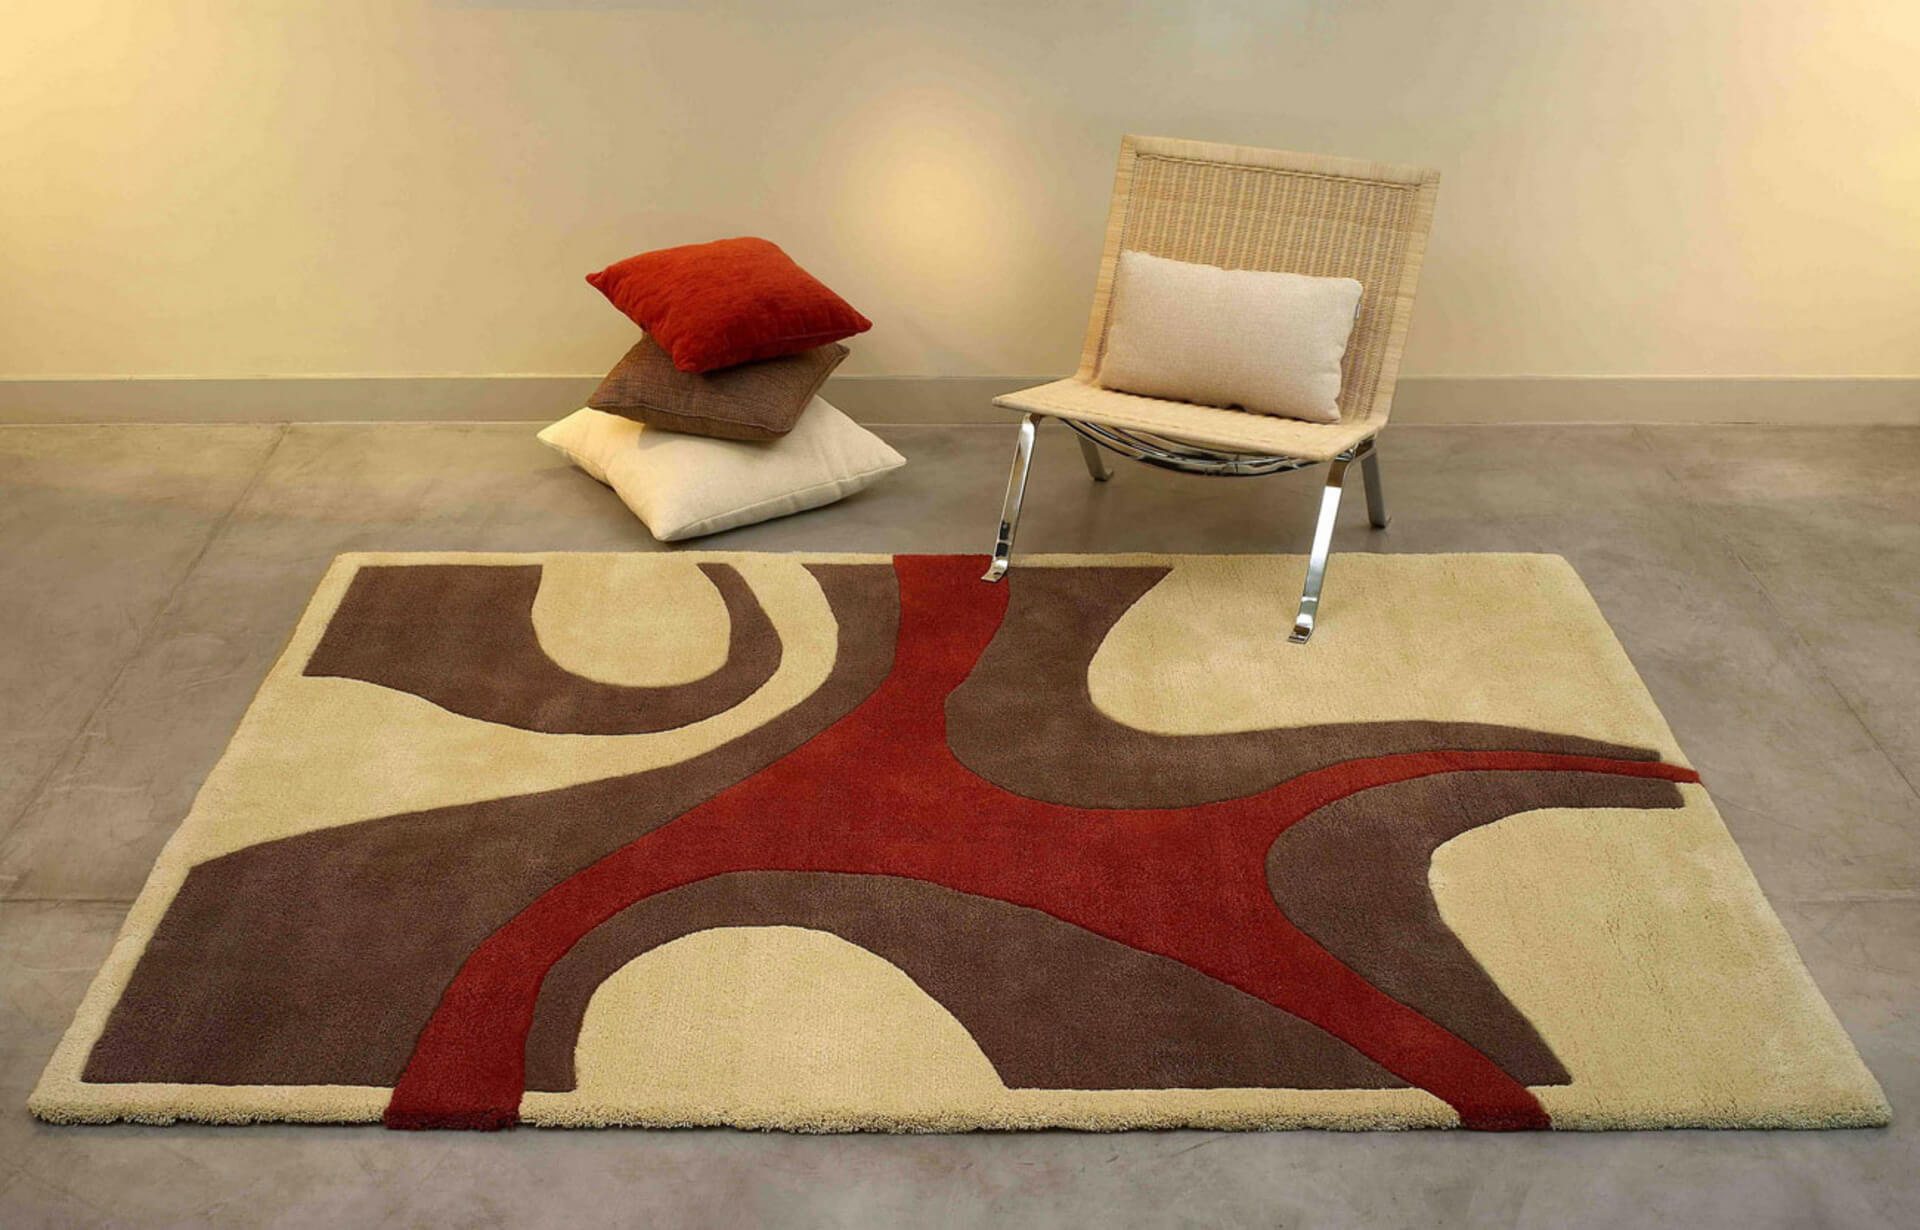 carpet interior design